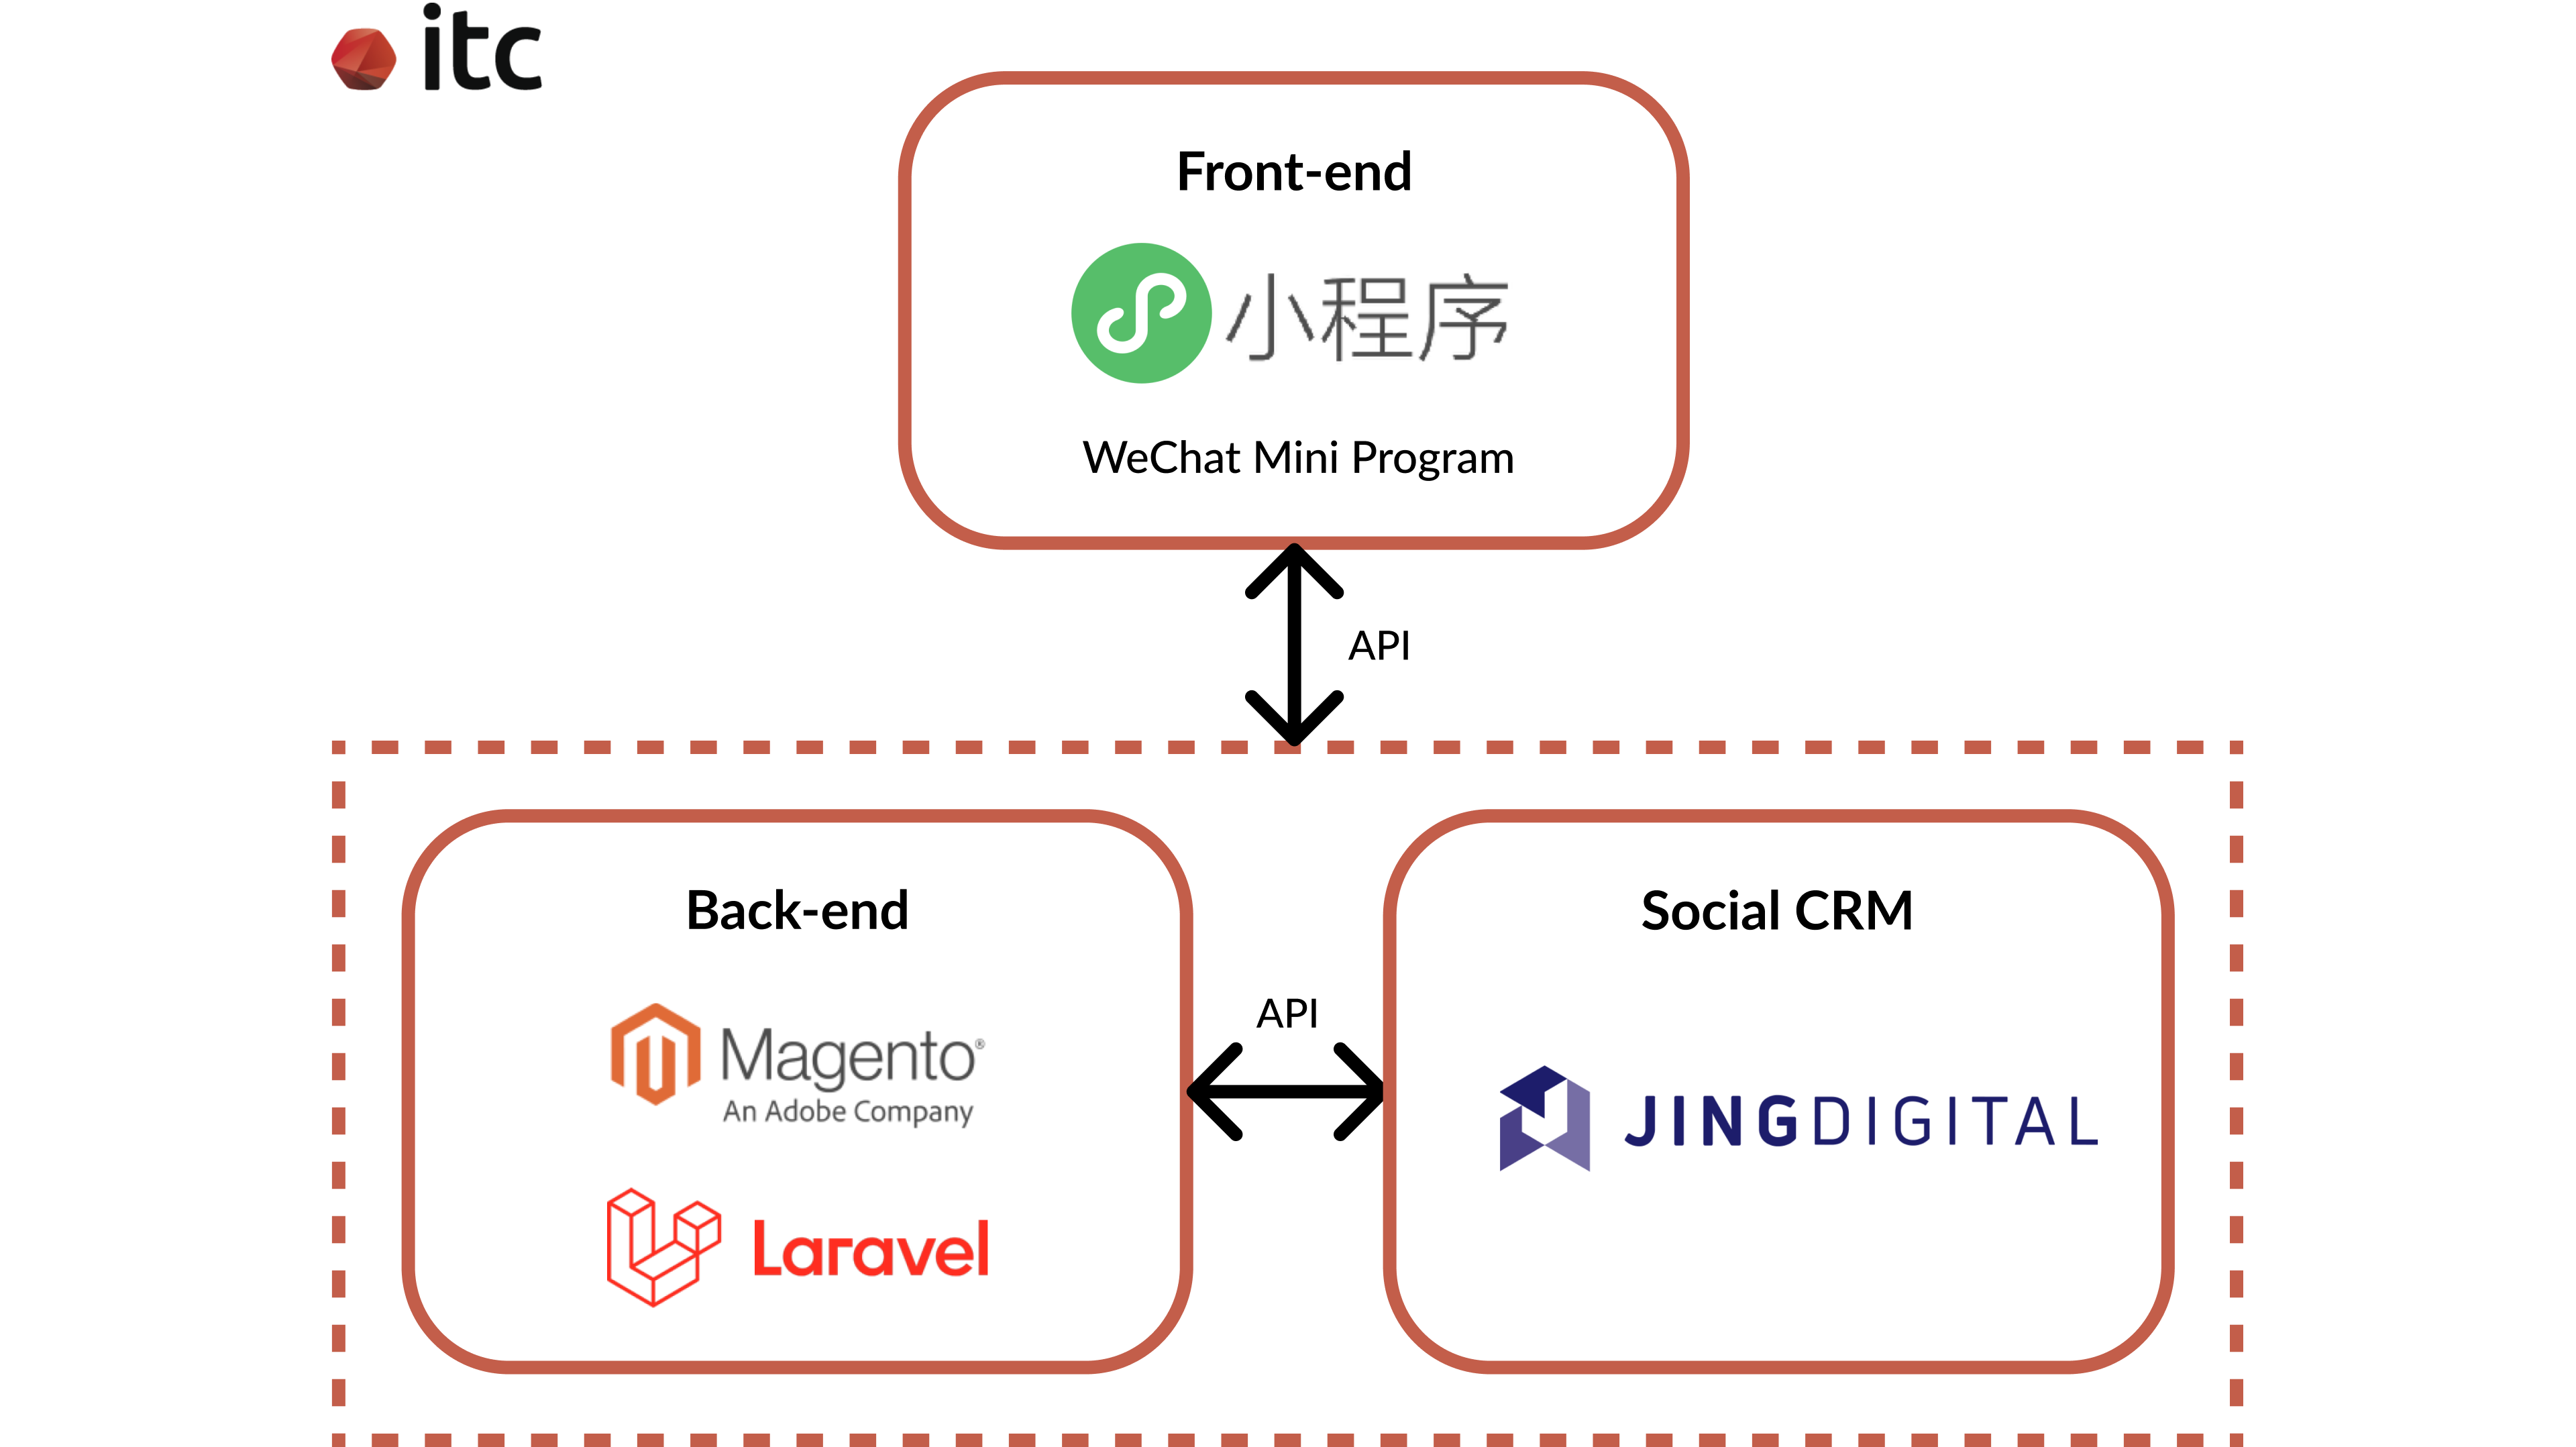 Technologies for developing the Vetreska e-Commerce WeChat Mini Program